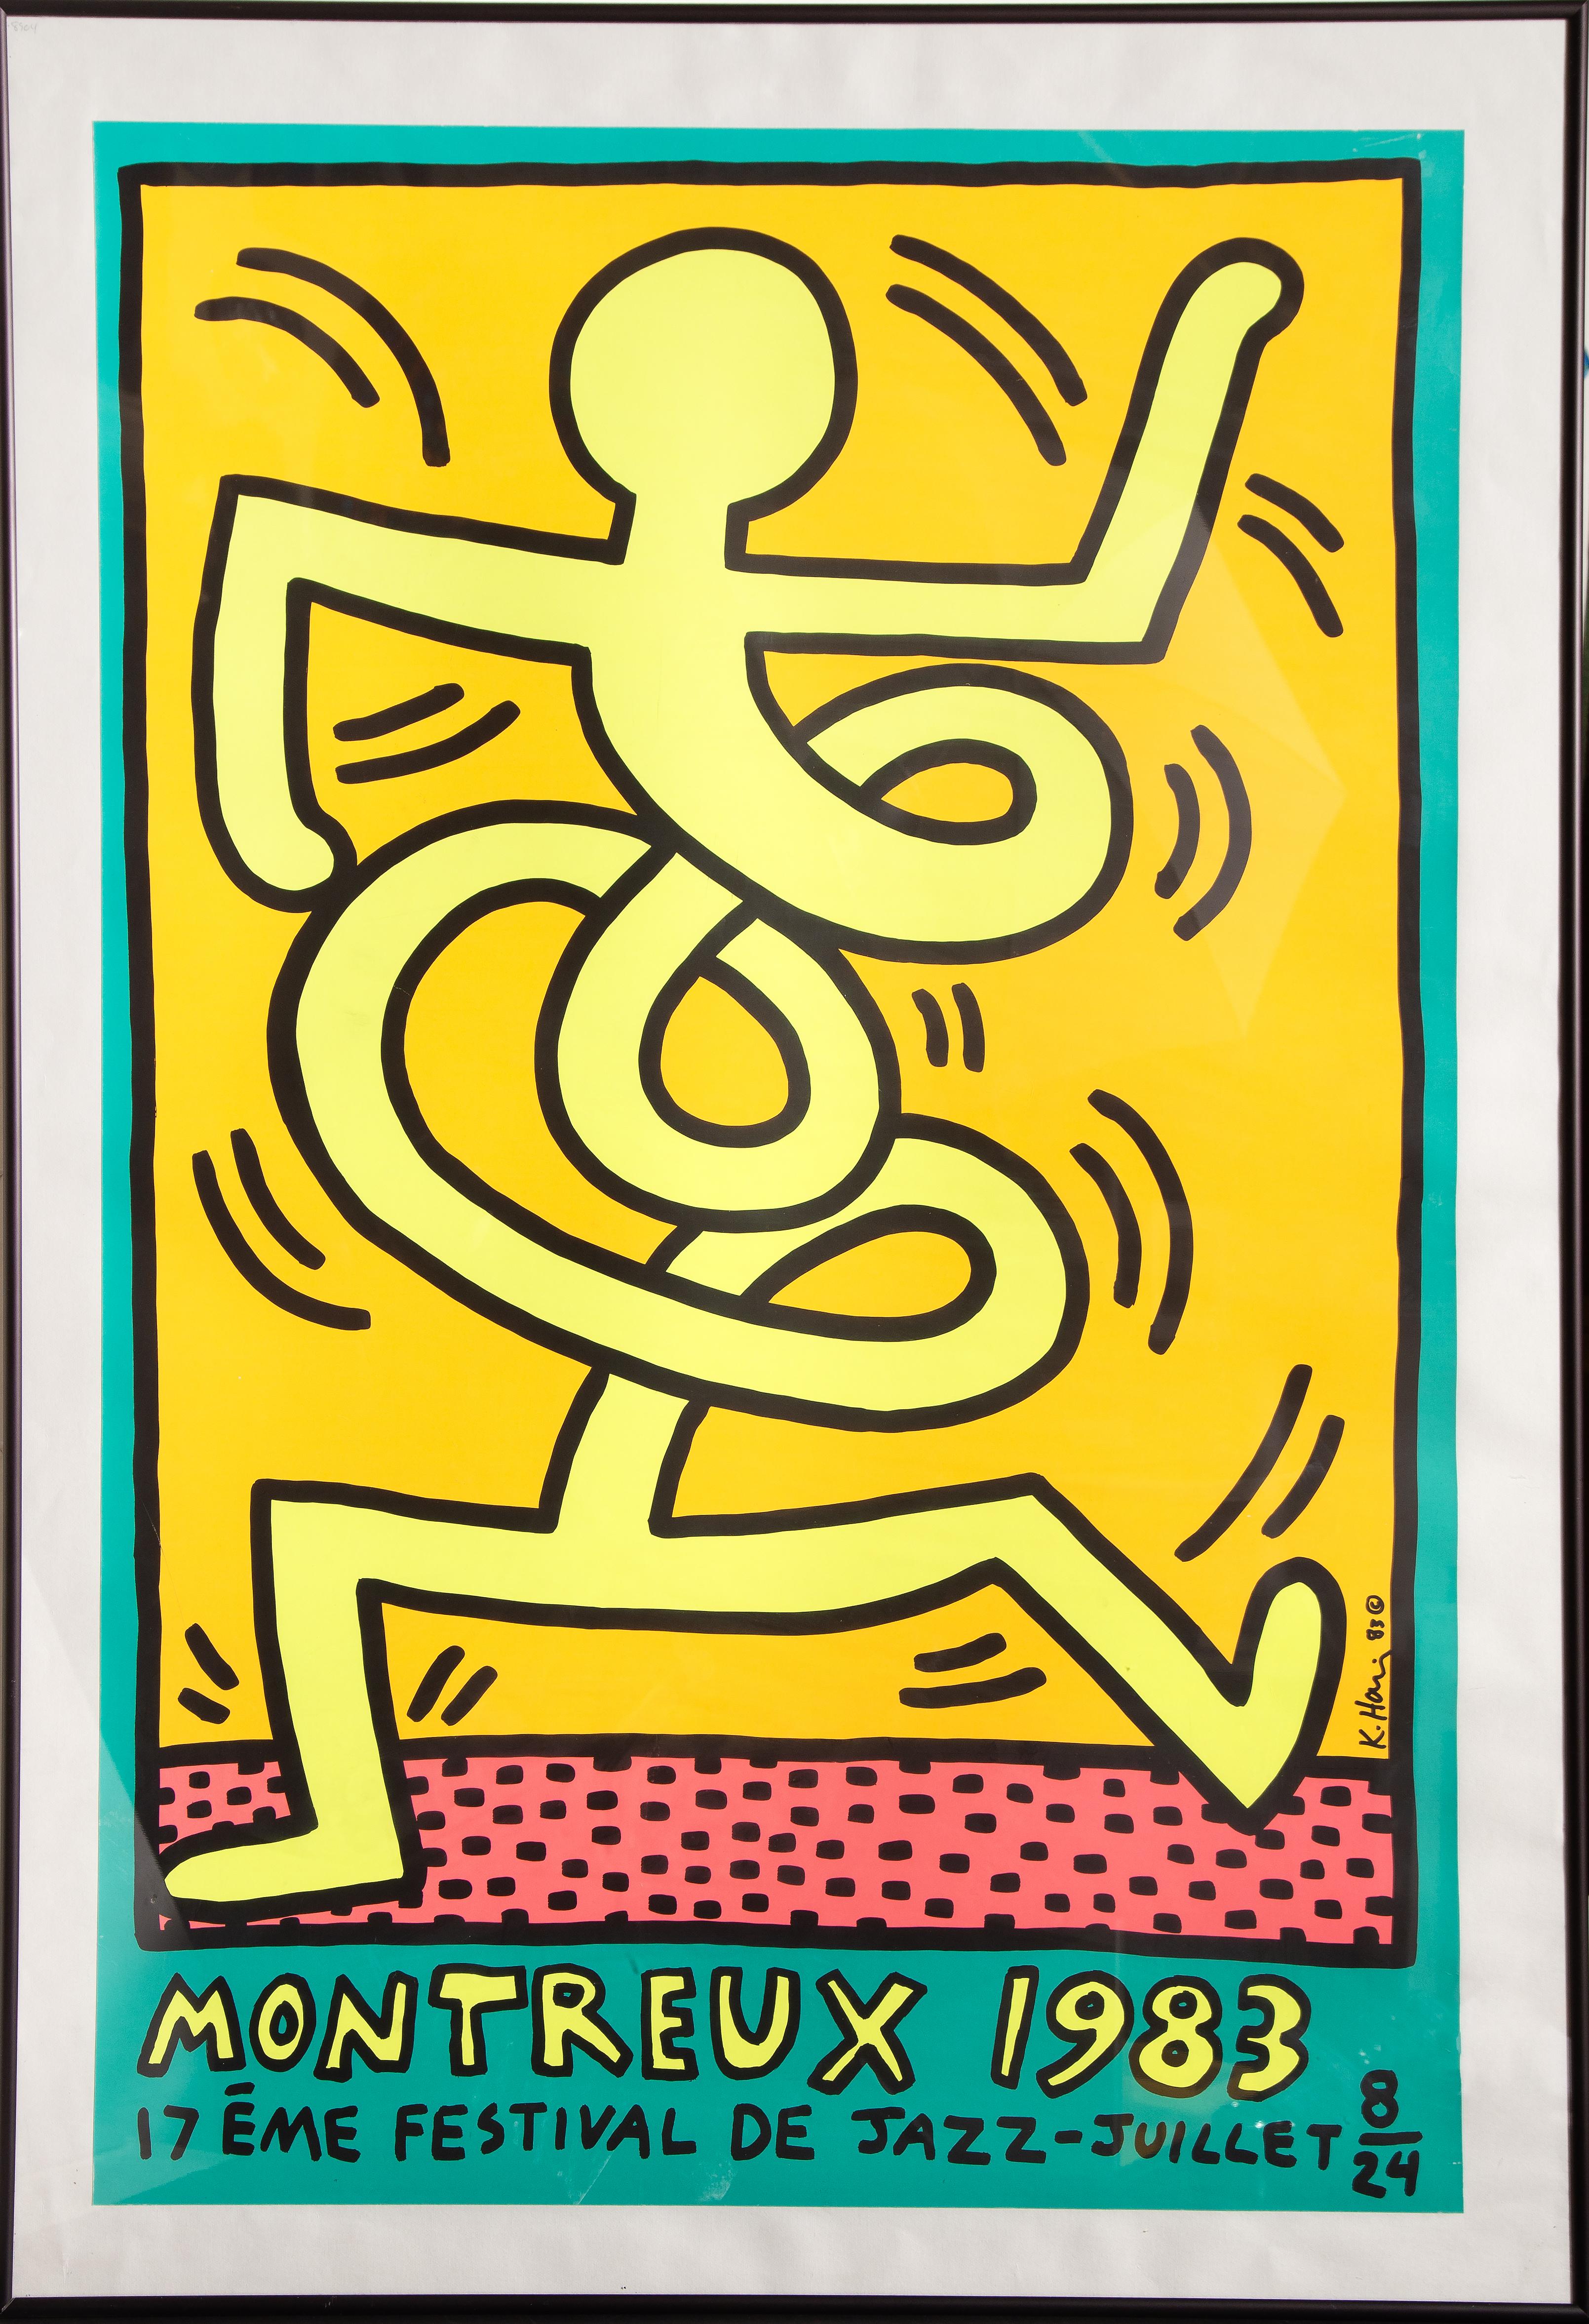 Ein Plakat für das 17. Montreux Jazz Festival im Jahr 1983. Das Plakat wurde von dem amerikanischen Pop-Künstler Keith Haring für das Festival entworfen. Das Stück ist auf der Platte signiert und datiert und schön gerahmt.

Montreux 1983
Keith